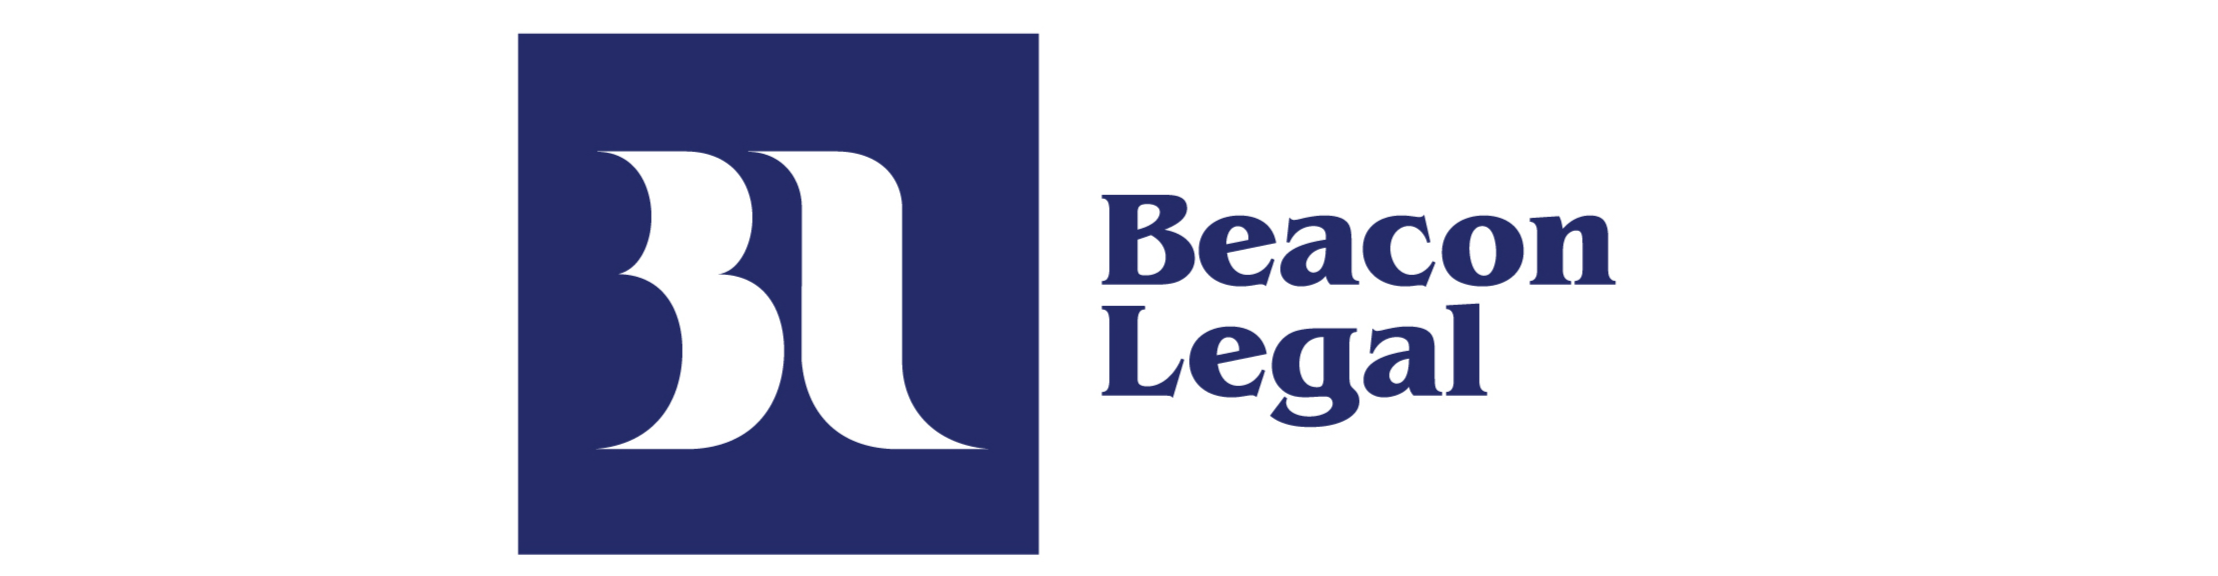 Beacon Legal banner